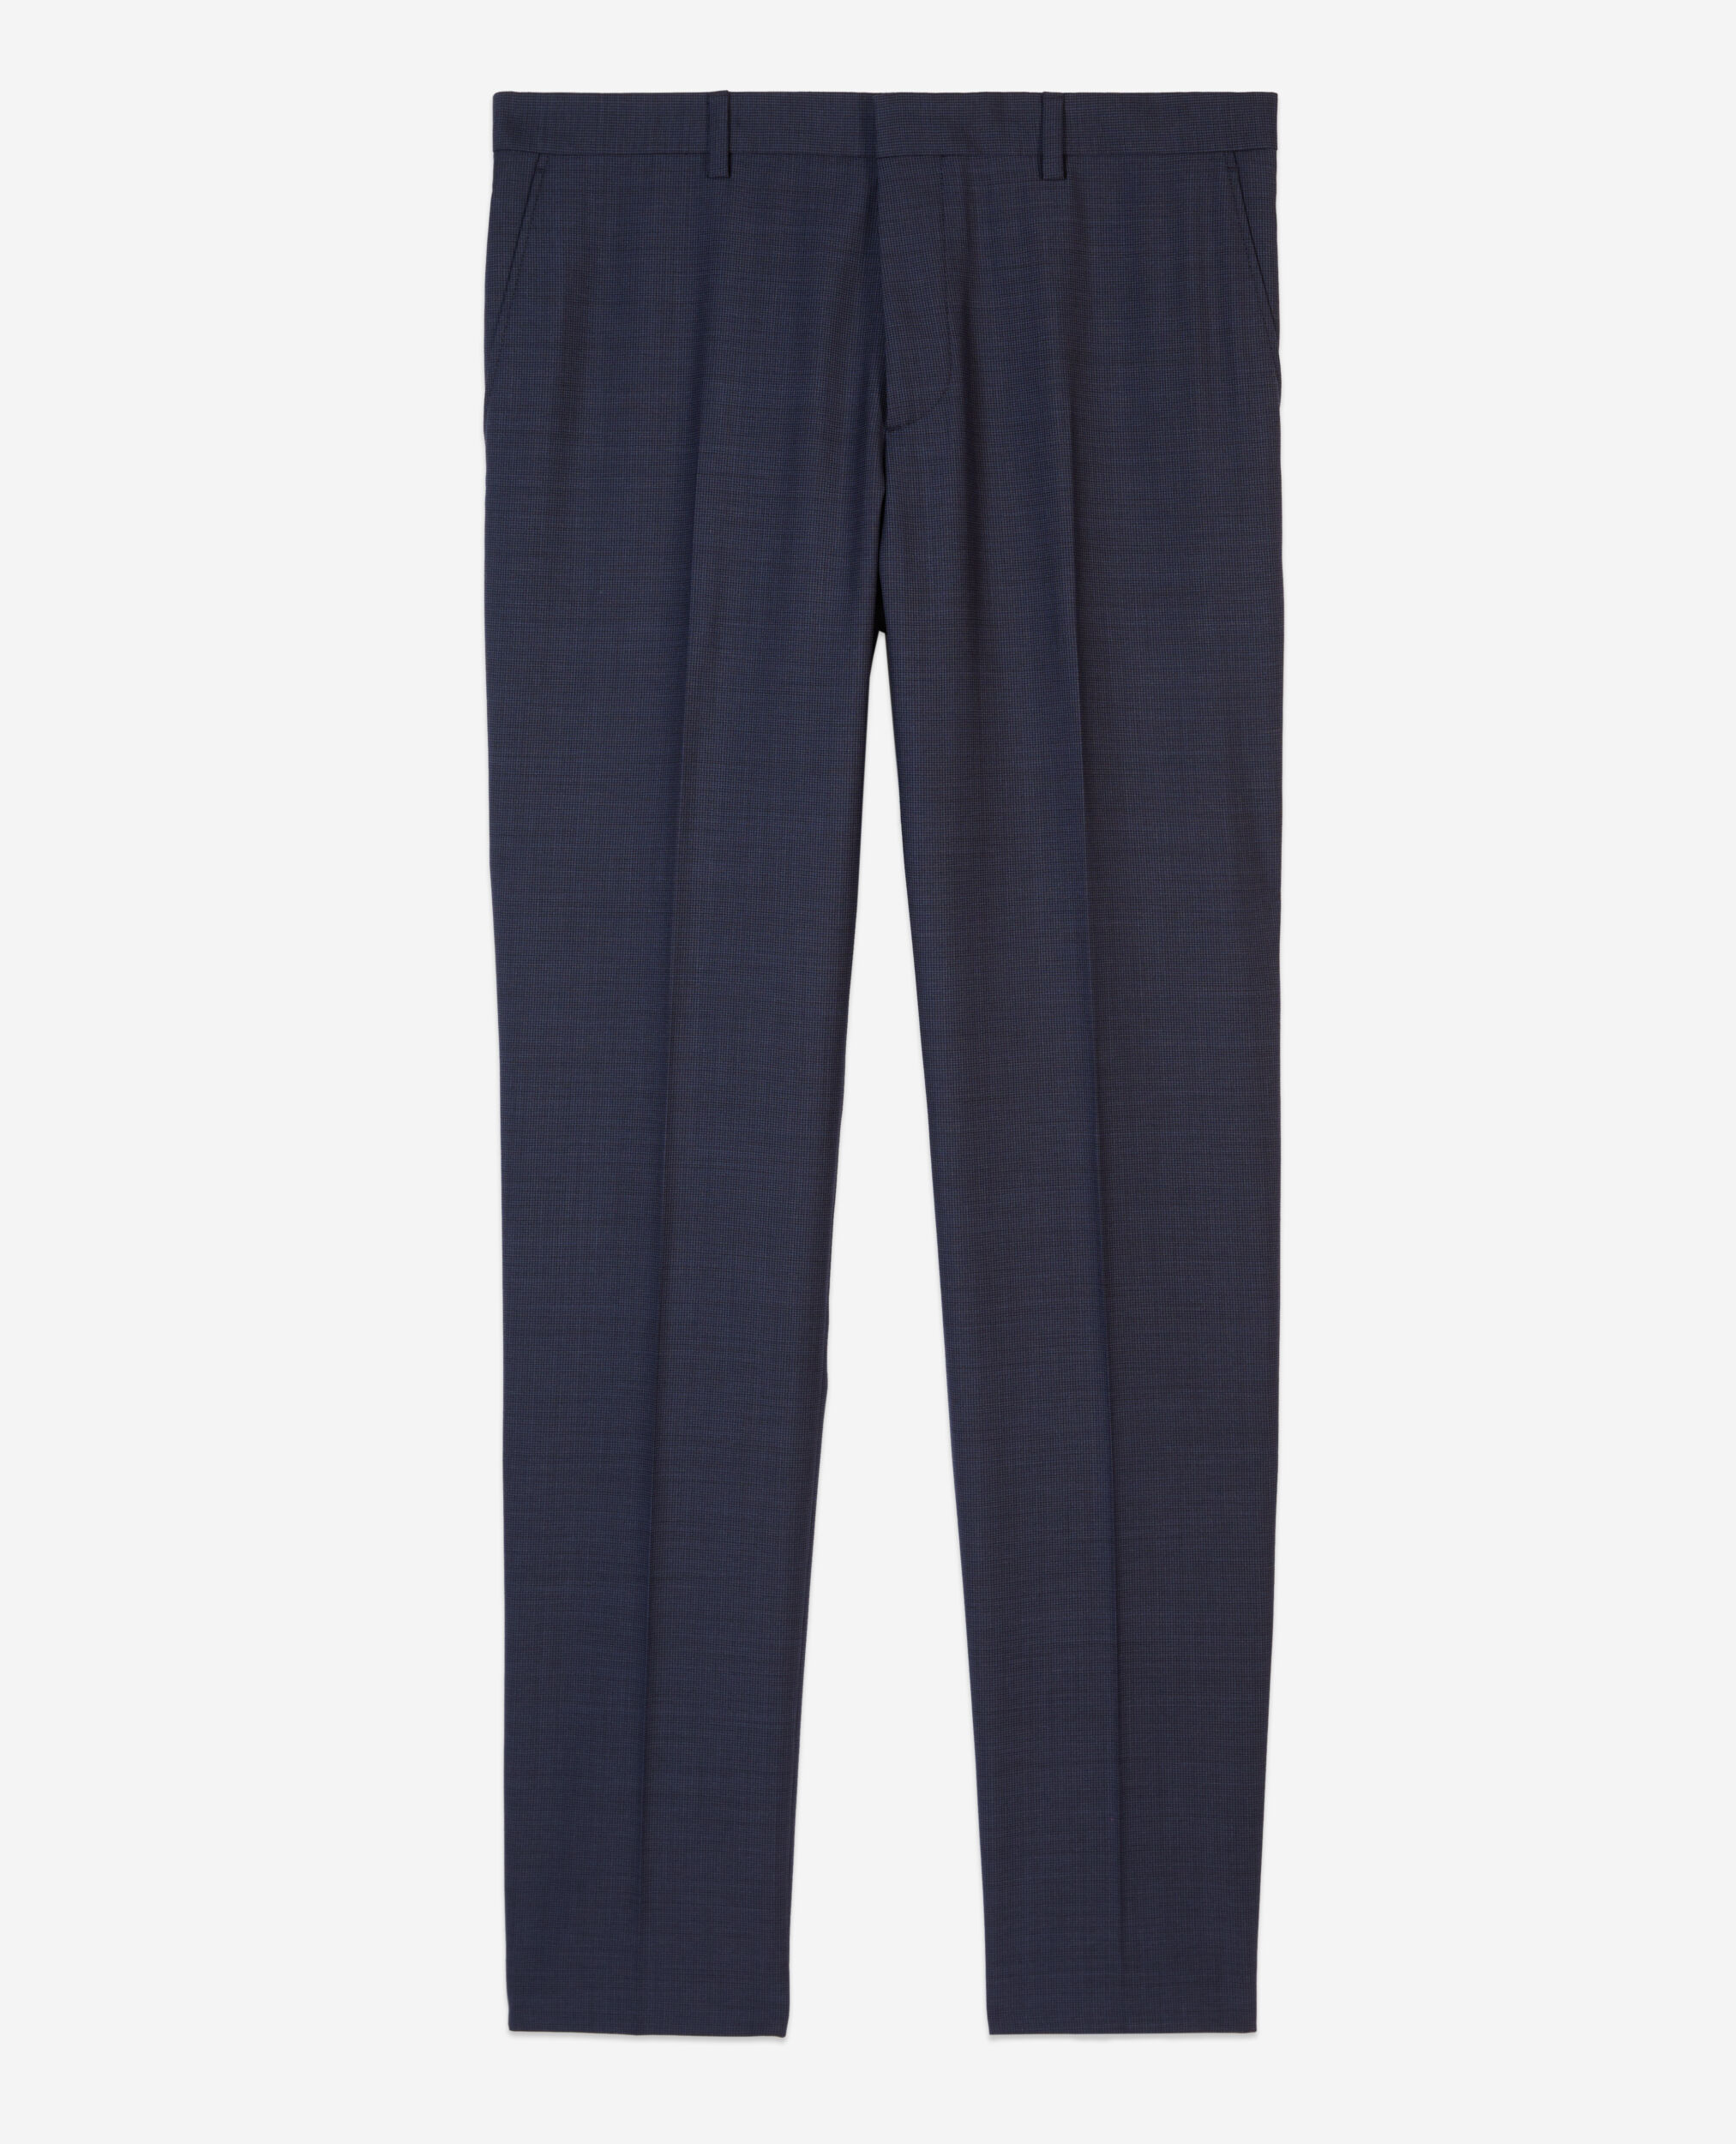 Pantalon de costume micro carreaux bleu marine en laine, NAVY, hi-res image number null